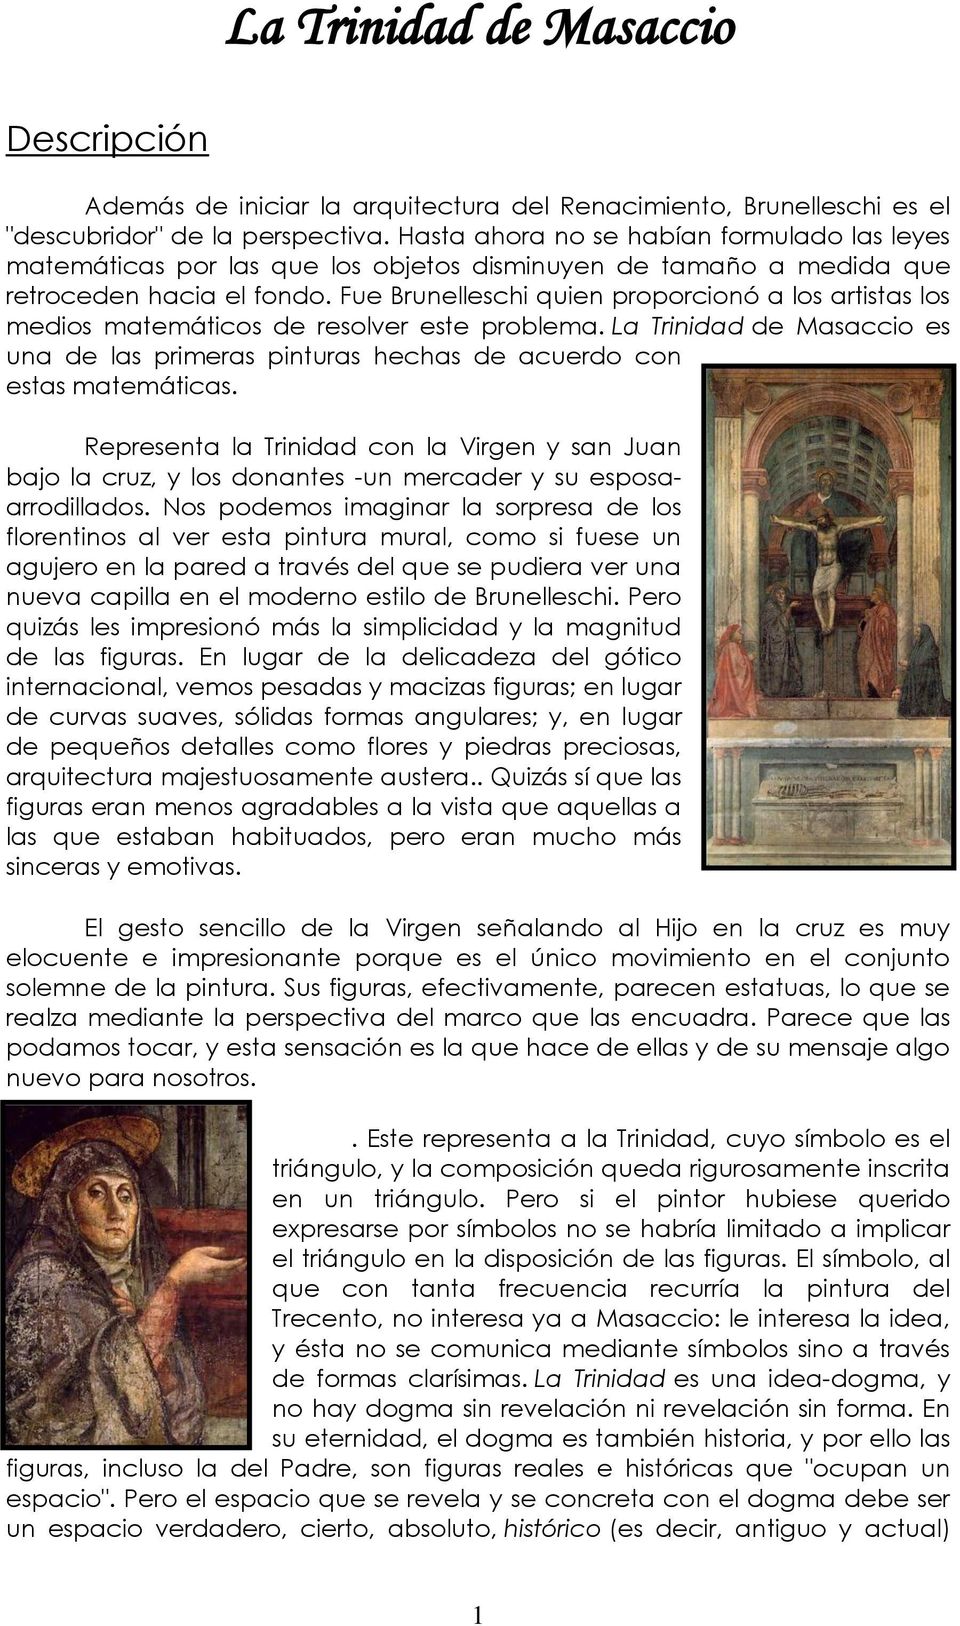 Fue Brunelleschi quien proporcionó a los artistas los medios matemáticos de resolver este problema. La Trinidad de Masaccio es una de las primeras pinturas hechas de acuerdo con estas matemáticas.